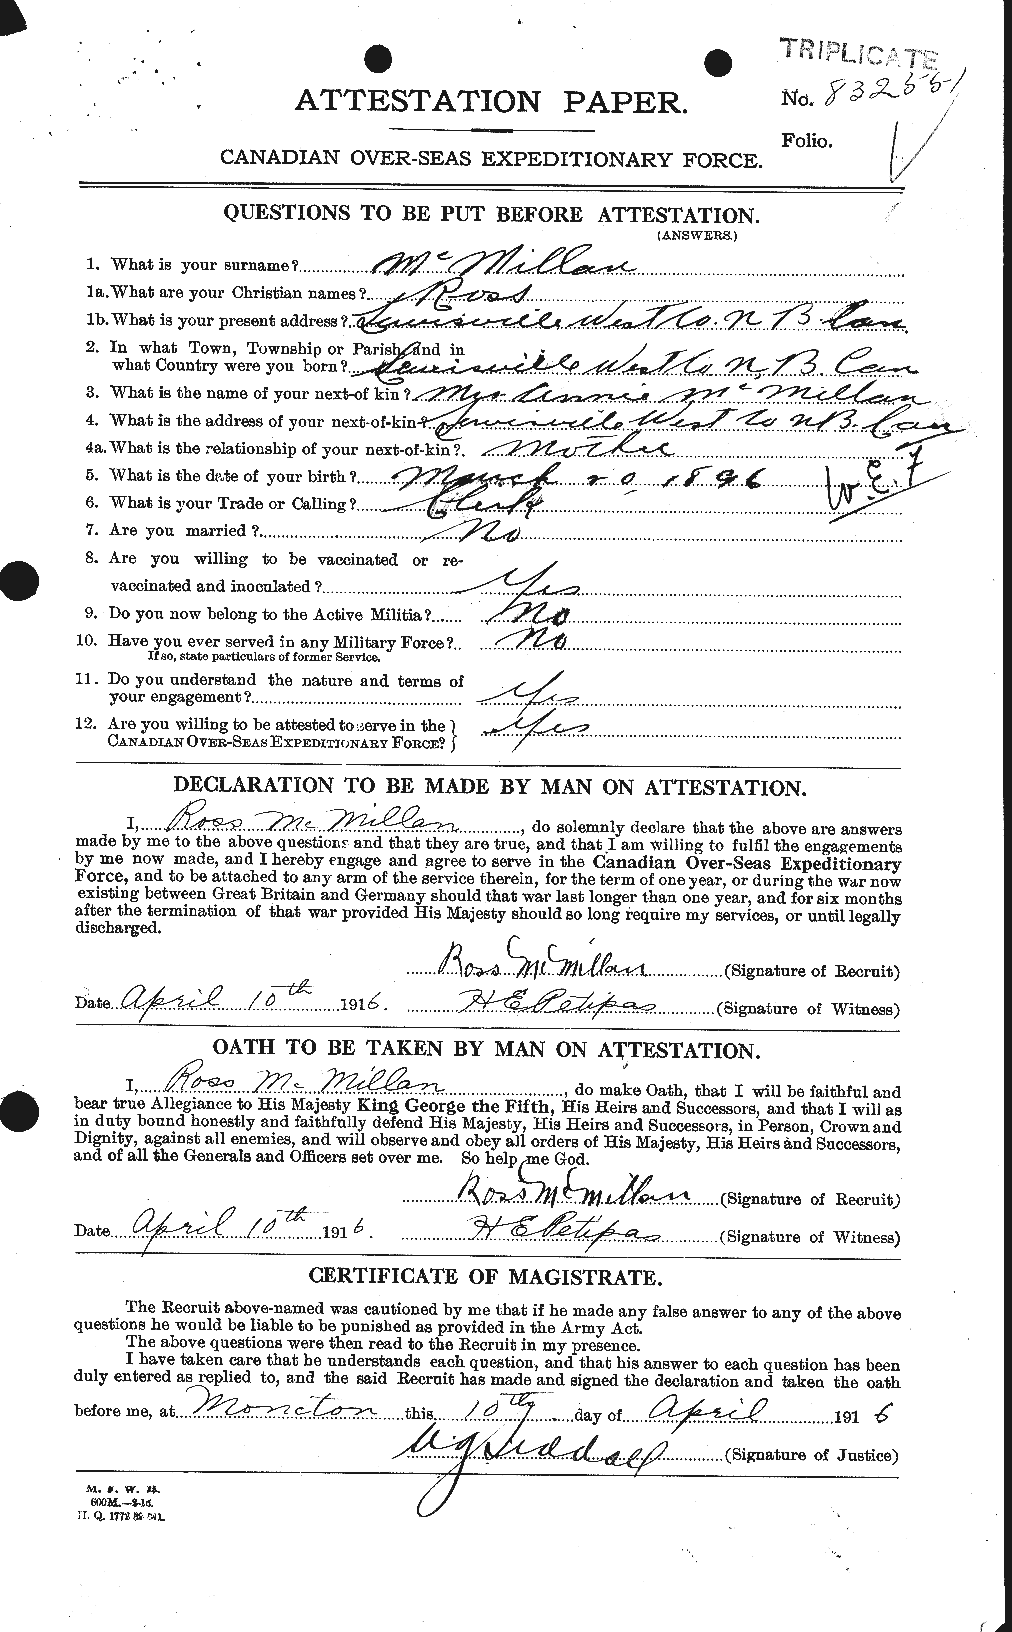 Dossiers du Personnel de la Première Guerre mondiale - CEC 536941a